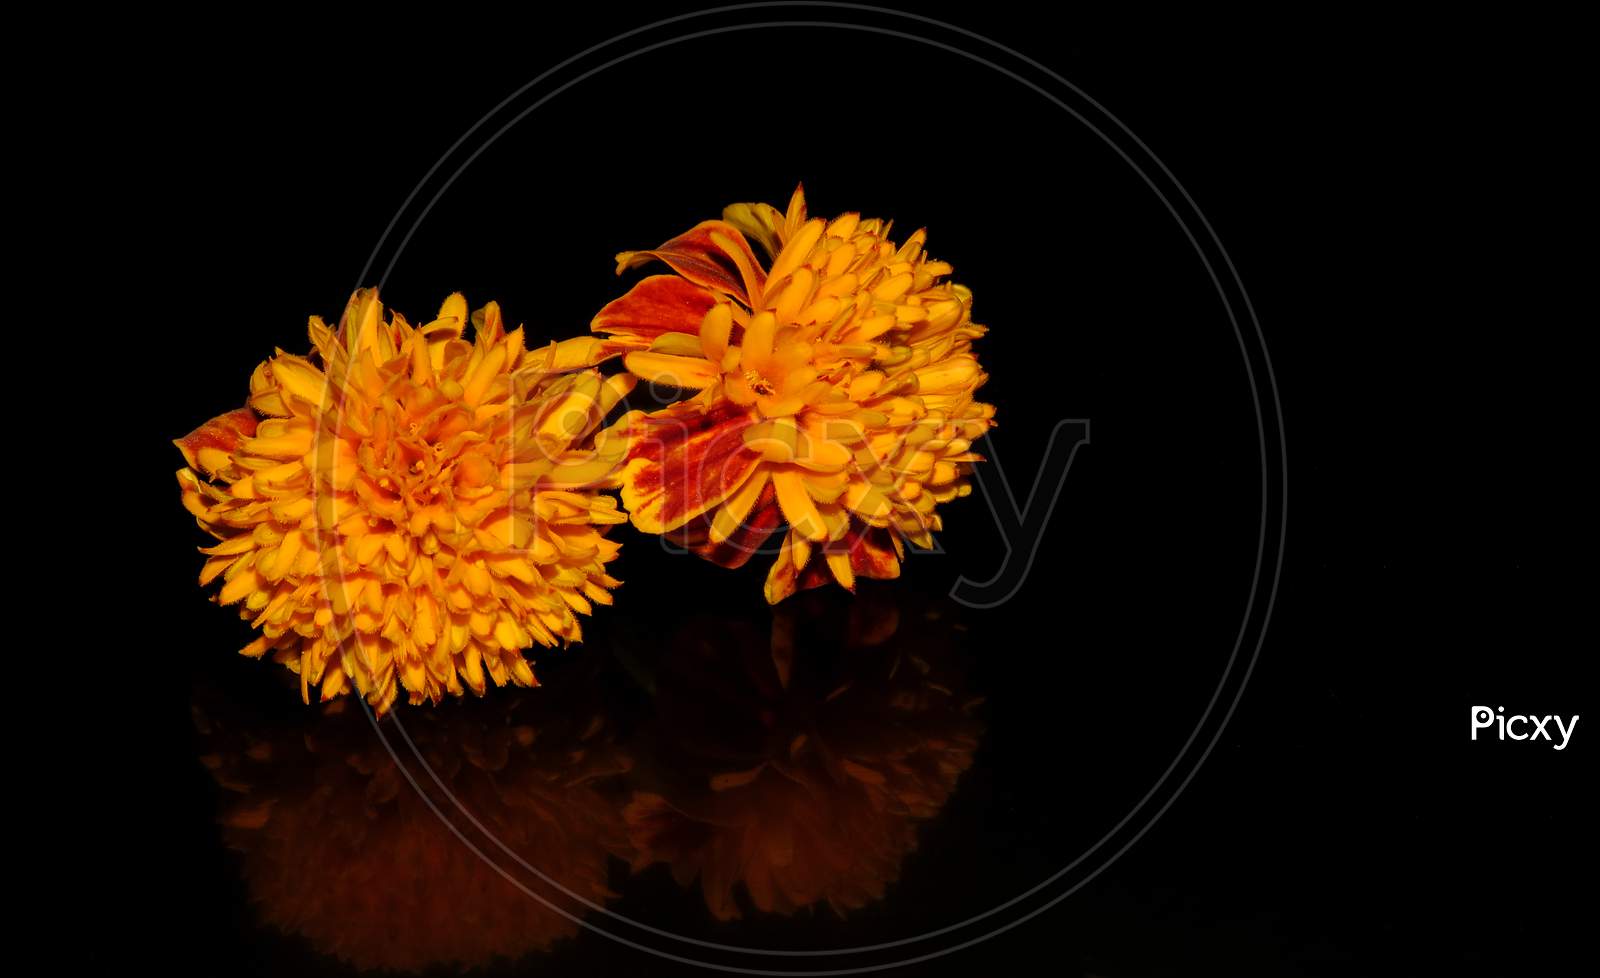 Orange Marigold flower or Tagetes Erecta on black background, Orange flower on black background,reflection of the flower.